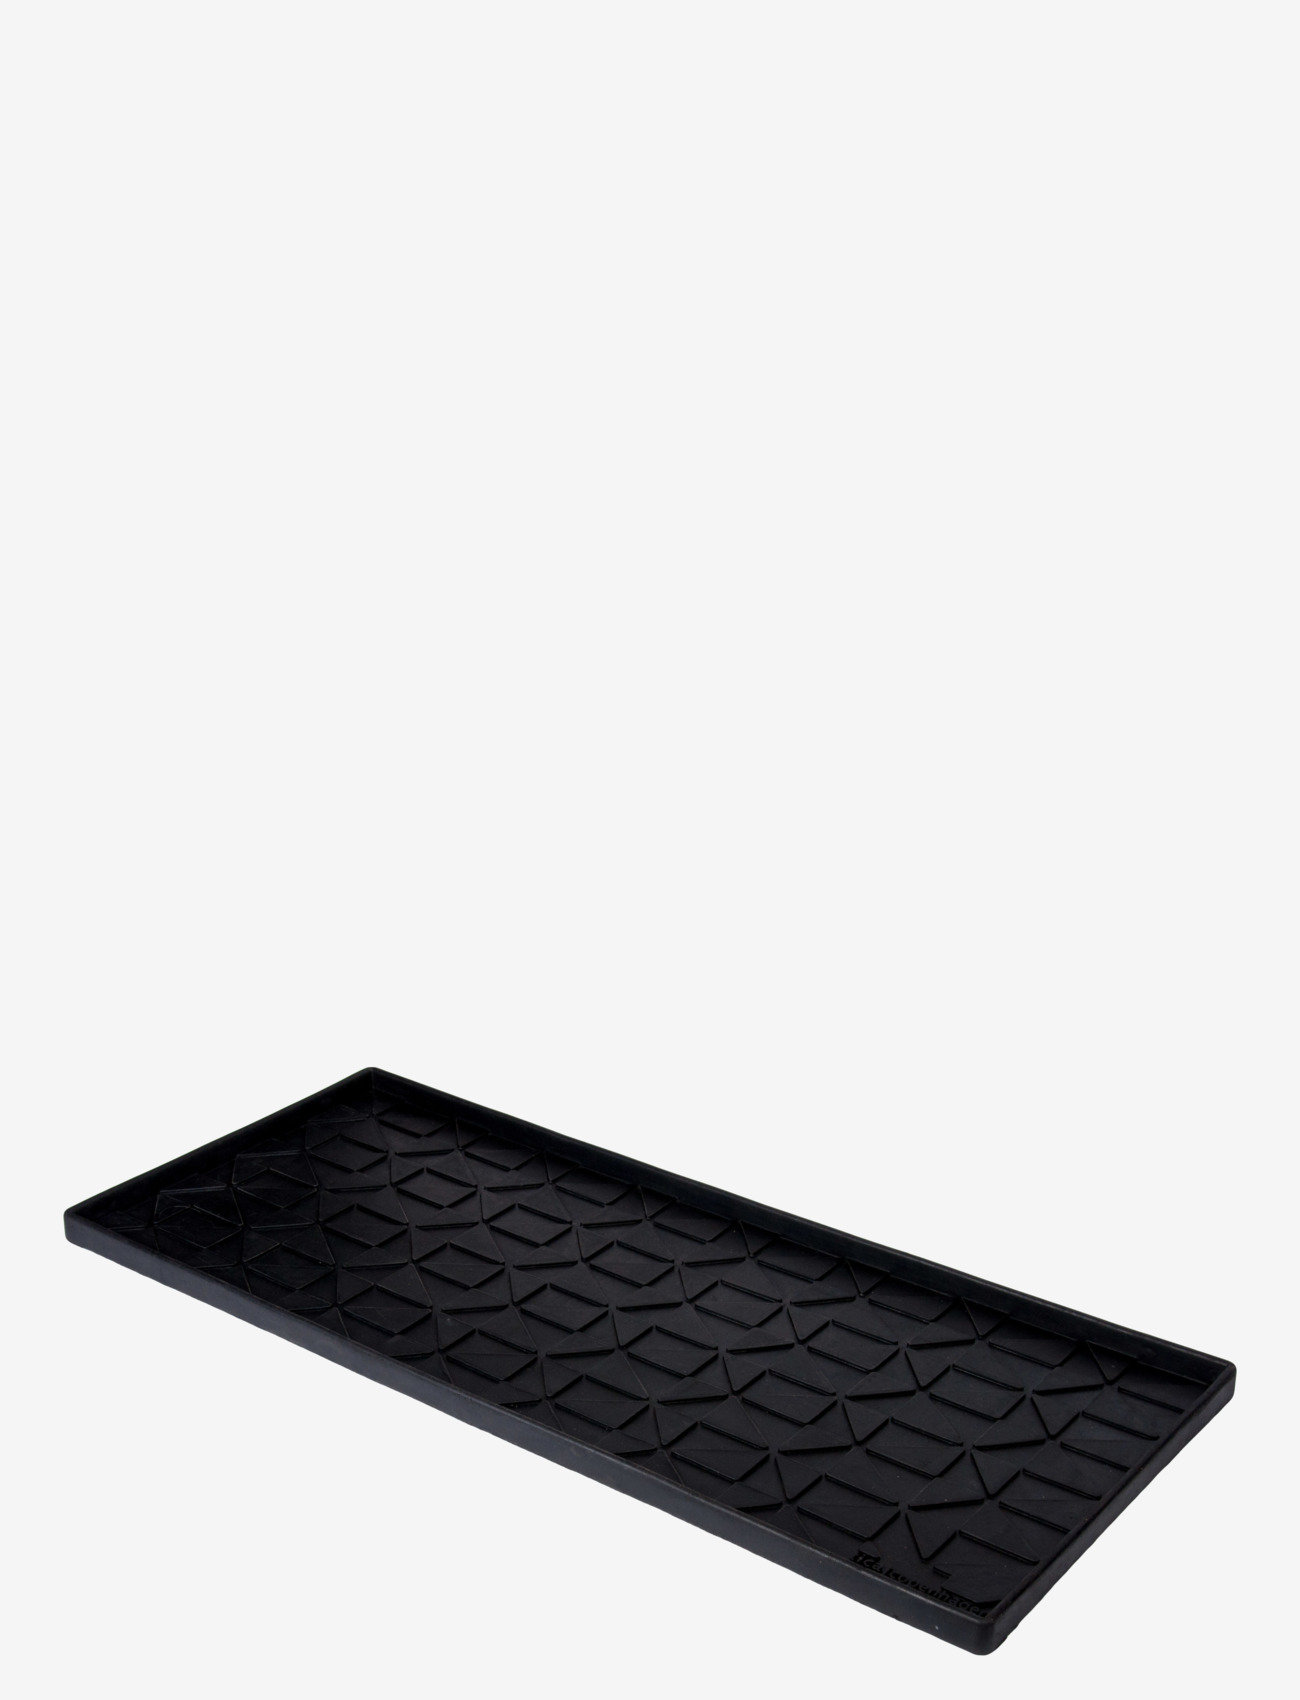 tica copenhagen - Shoe and boot tray rubber, L:88x38x3 cm - laveste priser - graphic design - 1